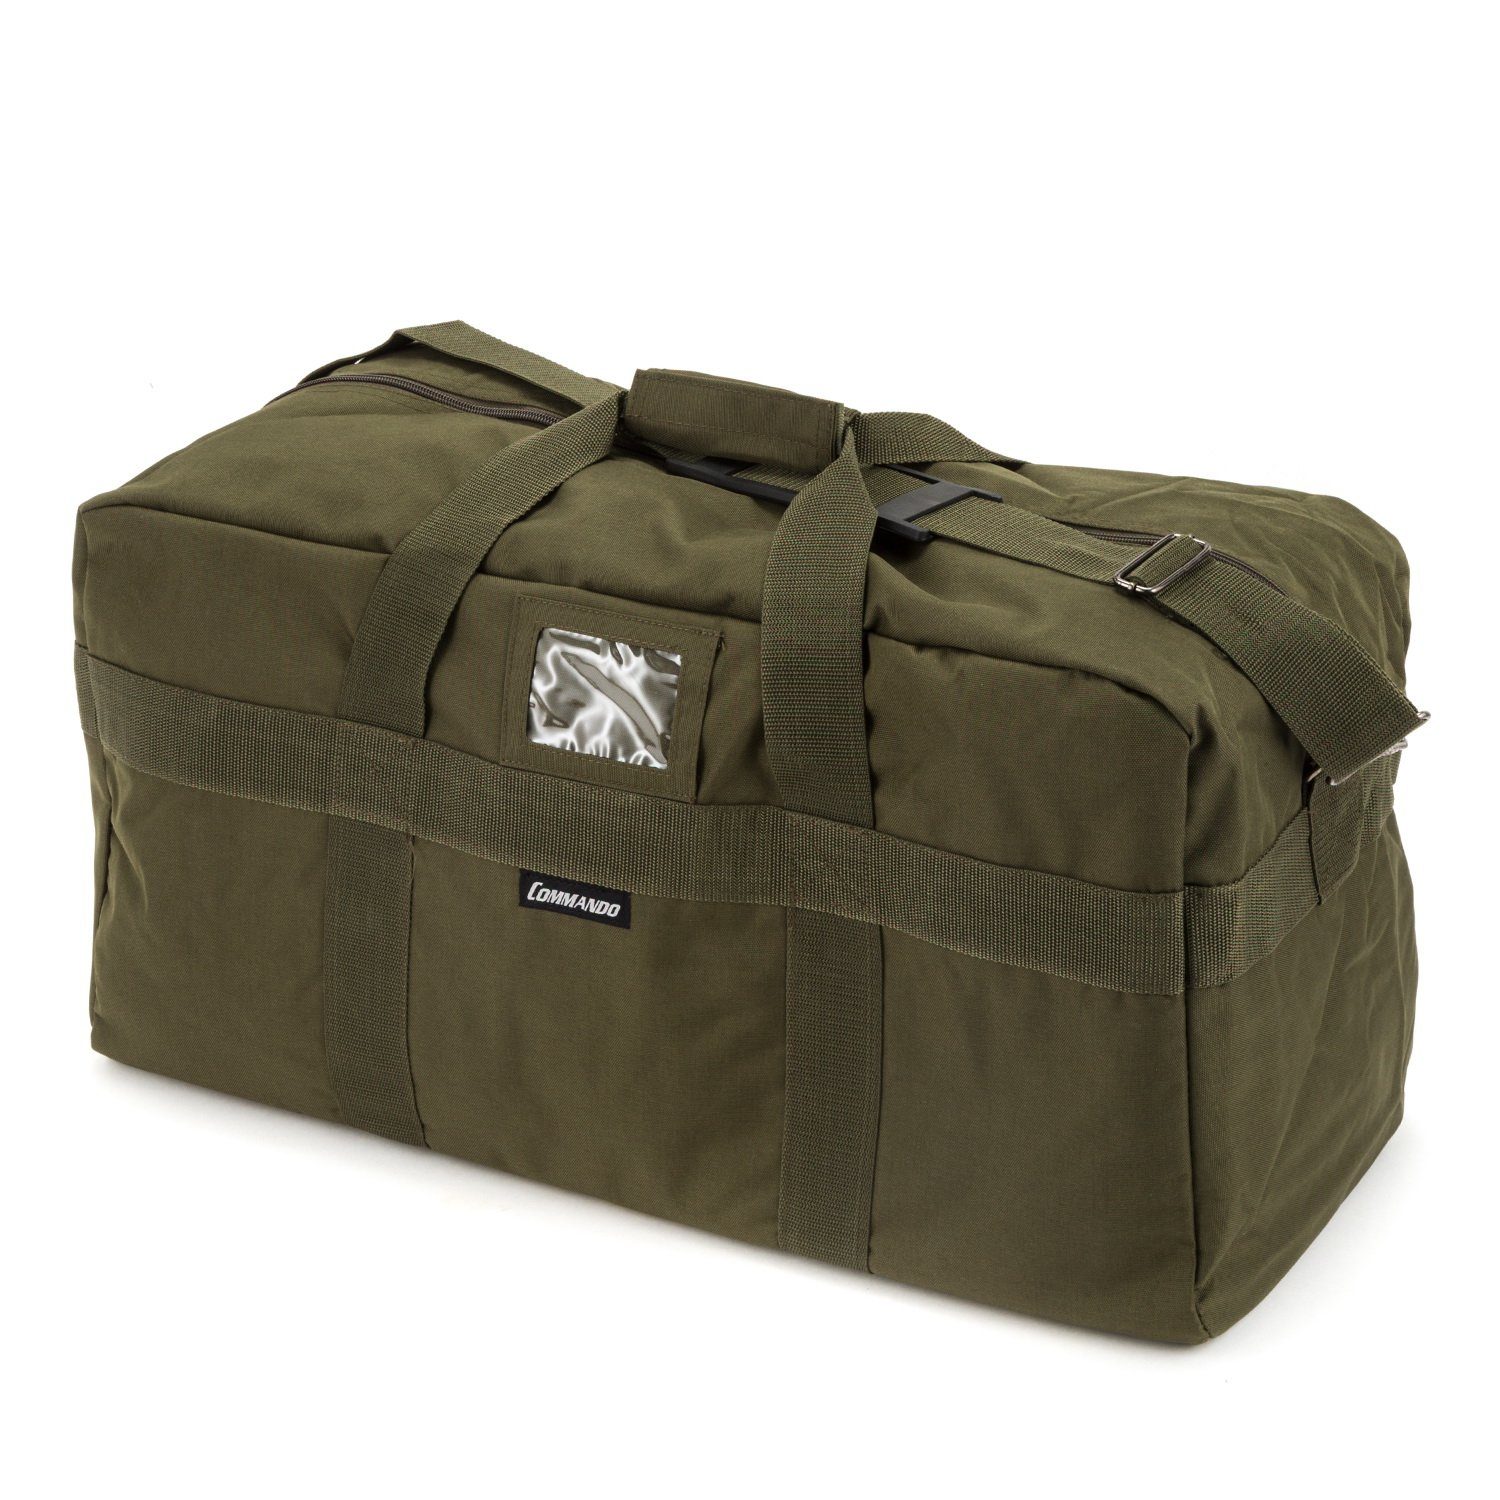 Commando-Industries Sporttasche US Army Airforce Bag Einsatztasche 57 L Oliv